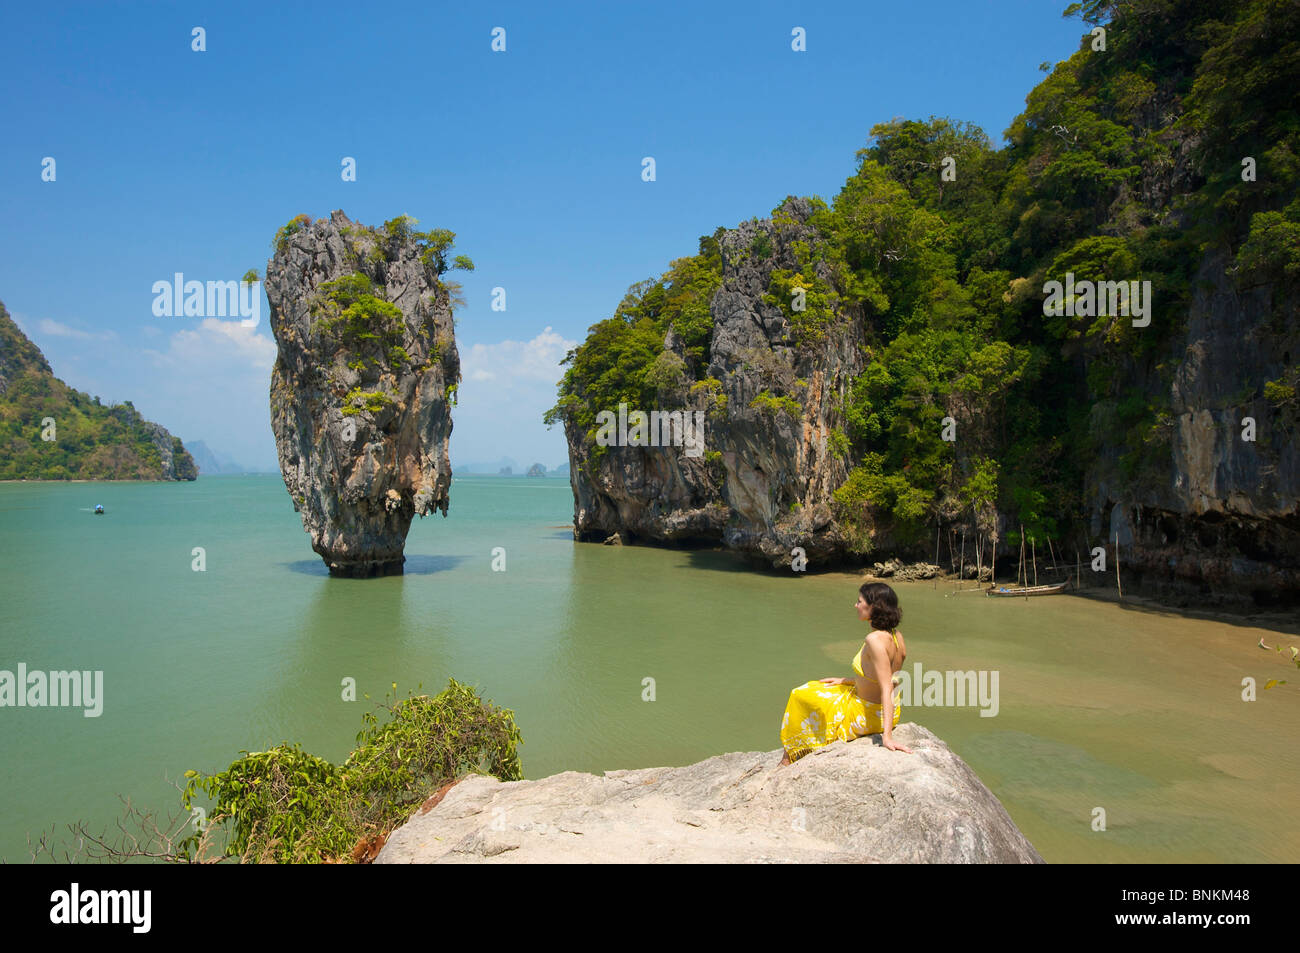 Asia Asian island isle islands isles Phuket South-East Asia Thailand ...